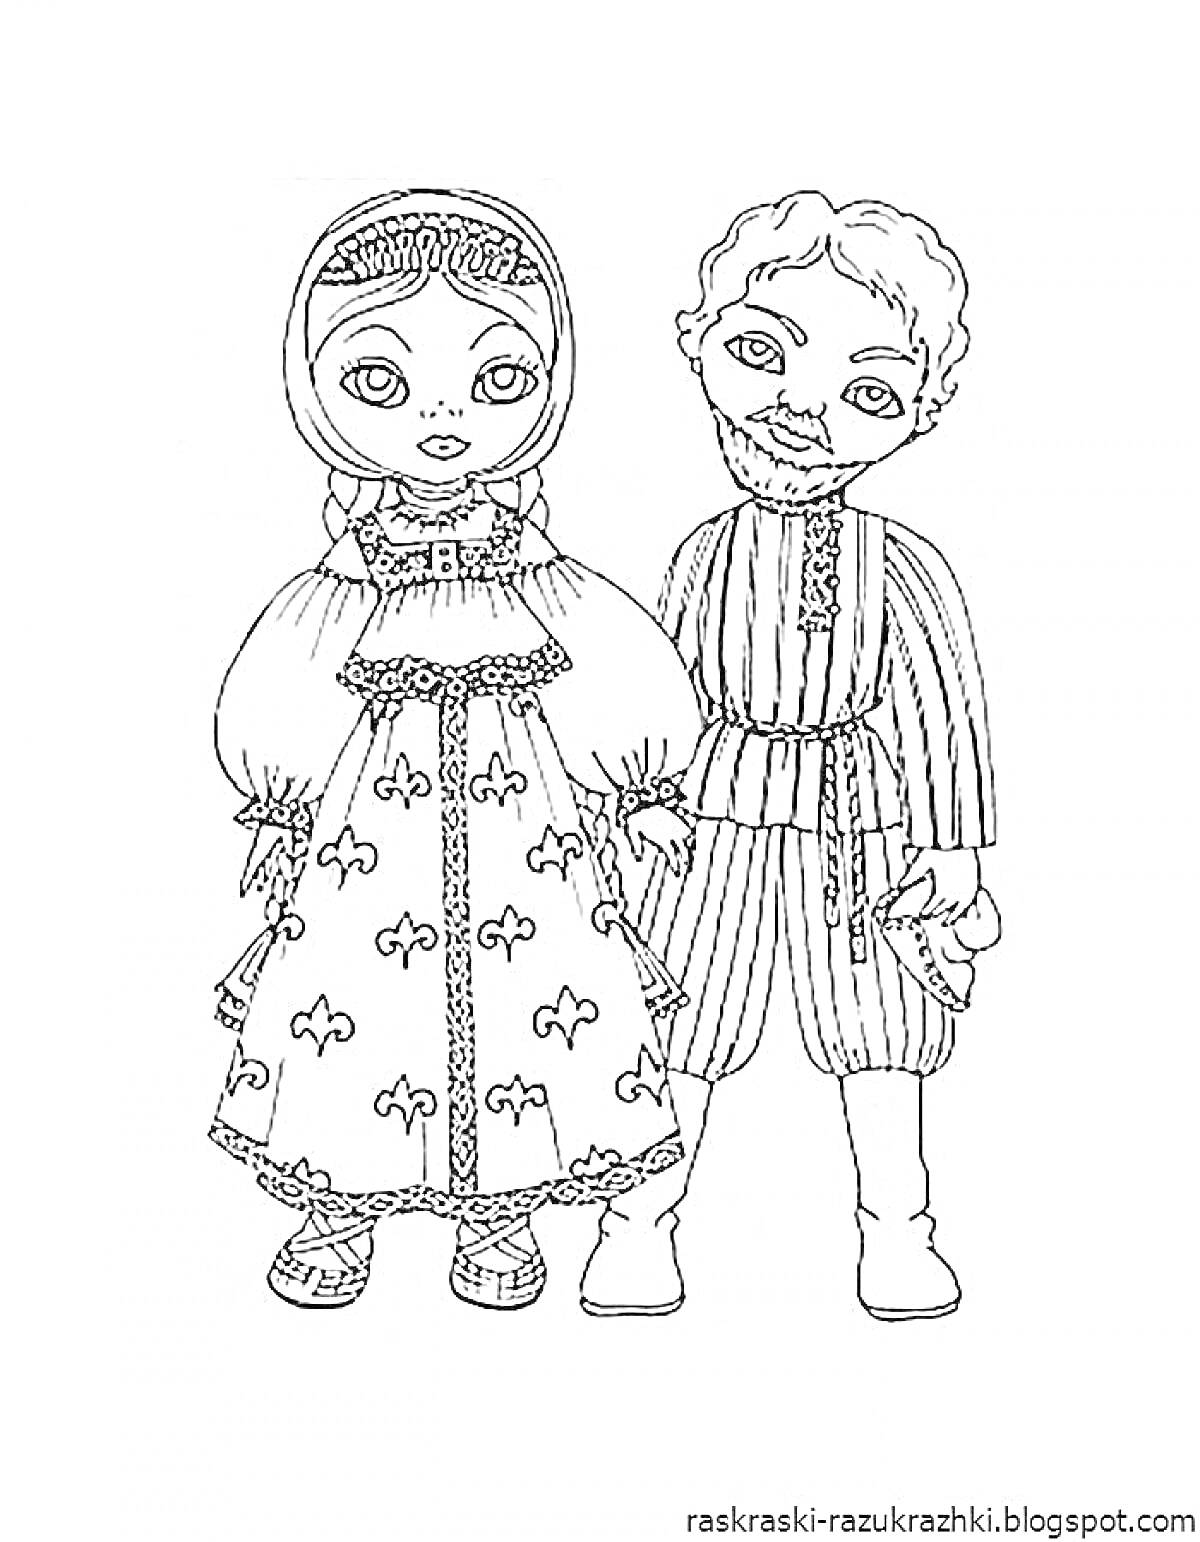 Раскраска Дети в русском народном костюме - девочка в платье с узором, фартуке и головном уборе; мальчик в рубахе с поясом и полосатых штанах